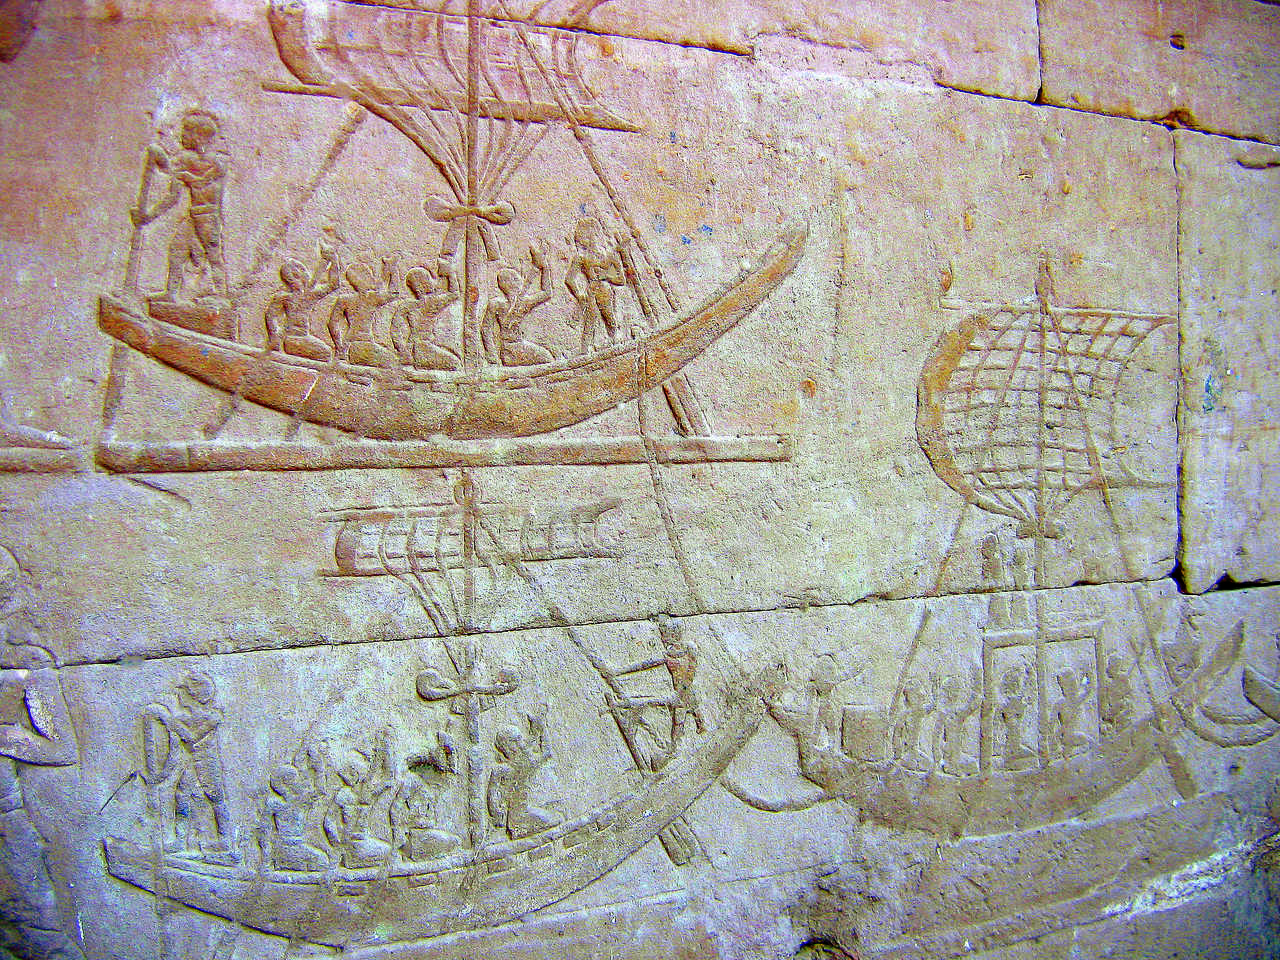 Hiéroglyphes et décoration temple, Egypte